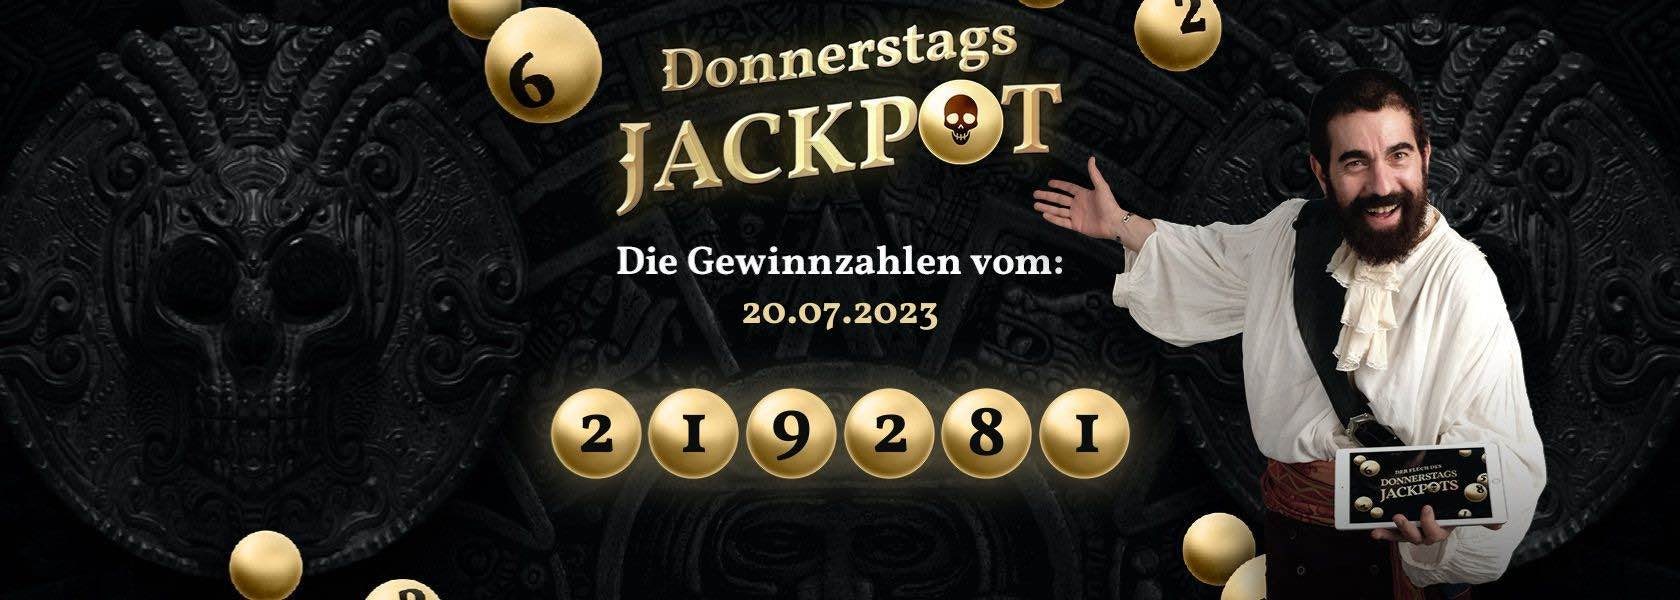 donnerstags-jackpot-heute-20072023-jackpotpiraten